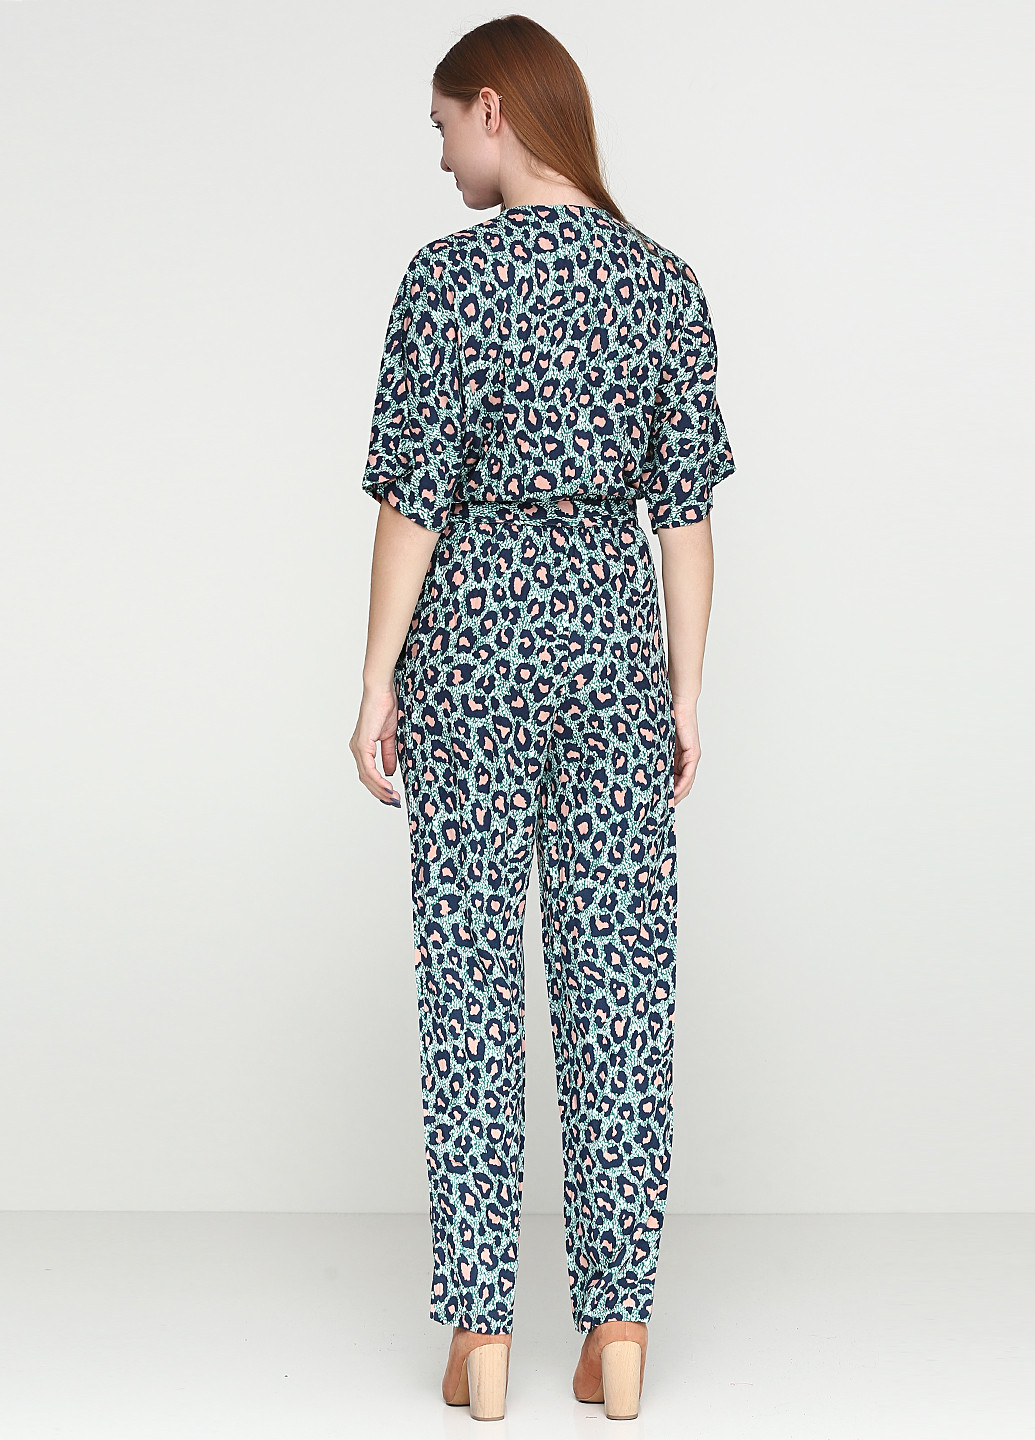 Комбинезон H&M комбинезон-брюки абстрактный бирюзовый кэжуал